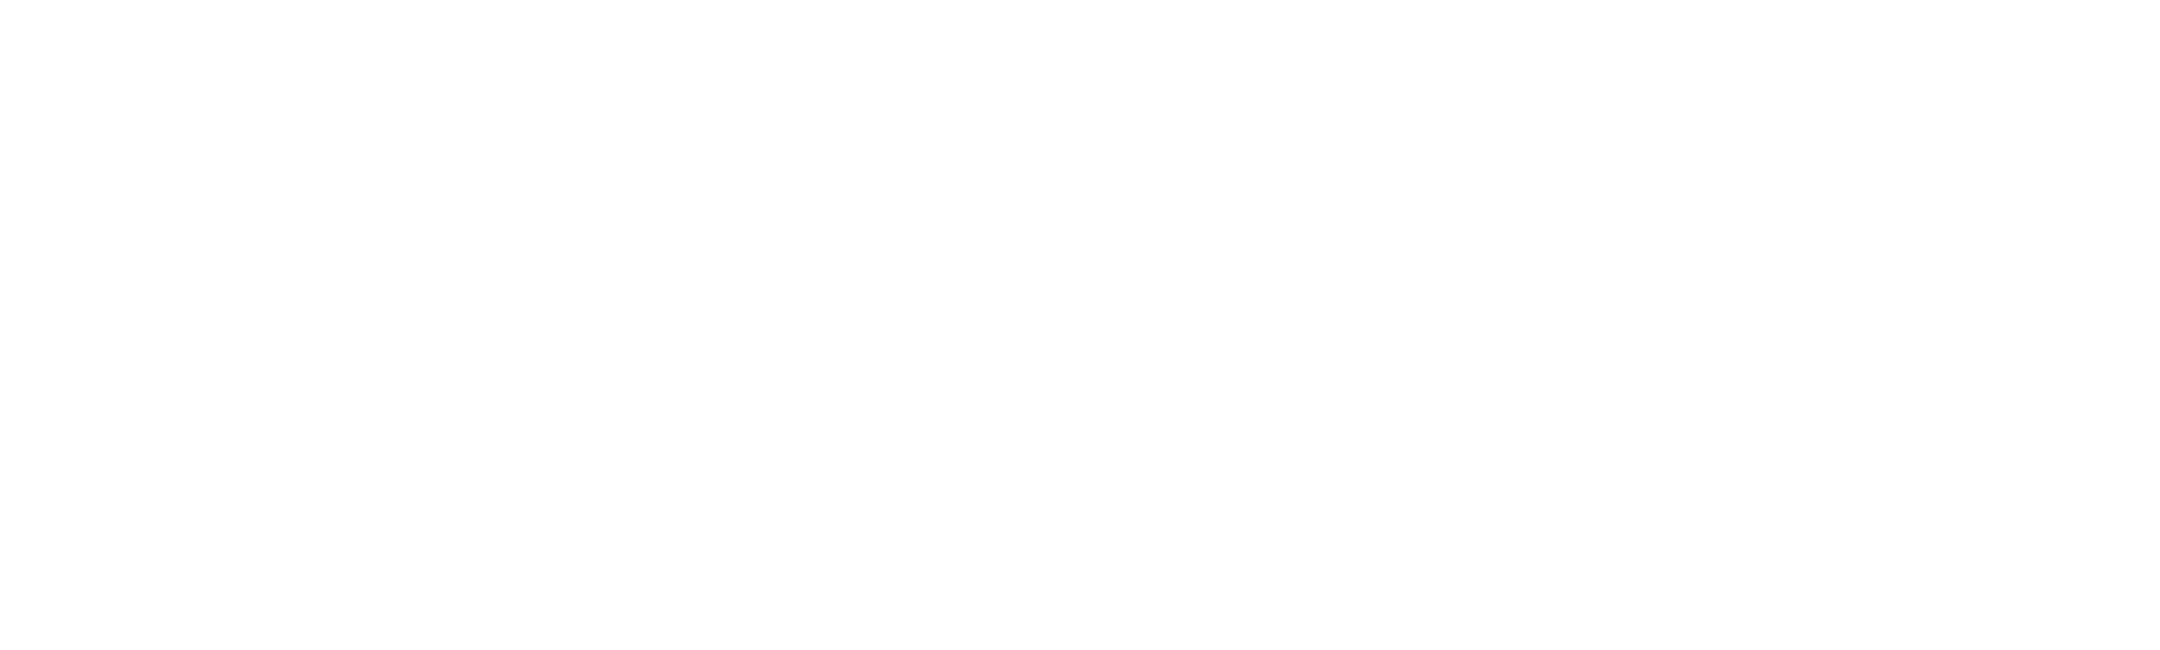 Procesor Platební Brány Pro Kryptoměnu - FSFPAY.com